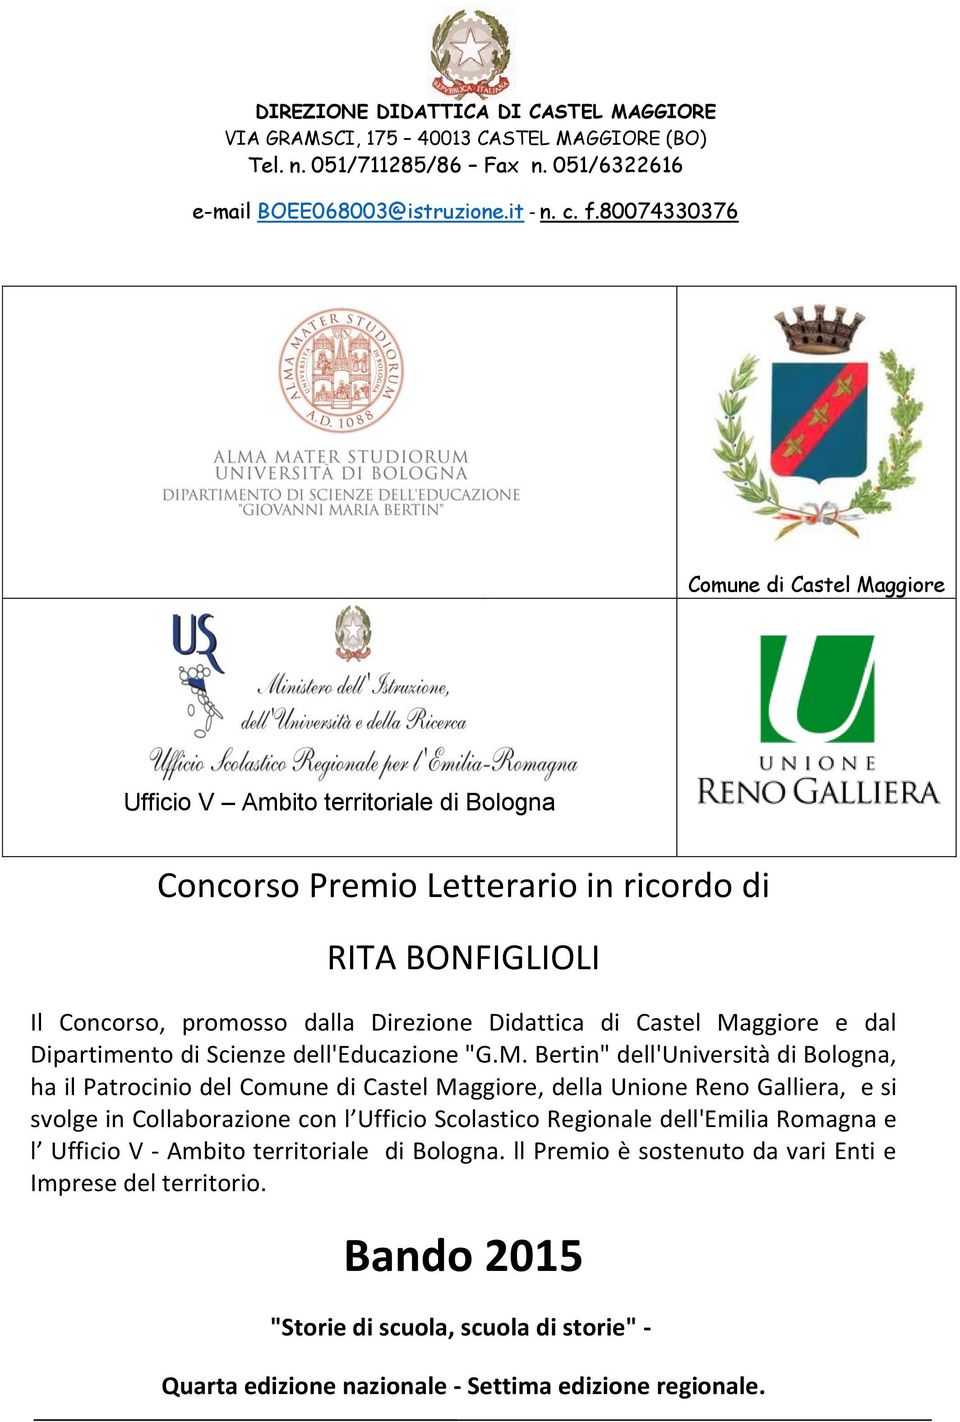 Maggiore e dal Dipartimento di Scienze dell'educazione "G.M. Bertin" dell'università di Bologna, ha il Patrocinio del Comune di Castel Maggiore, della Unione Reno Galliera, e si svolge in